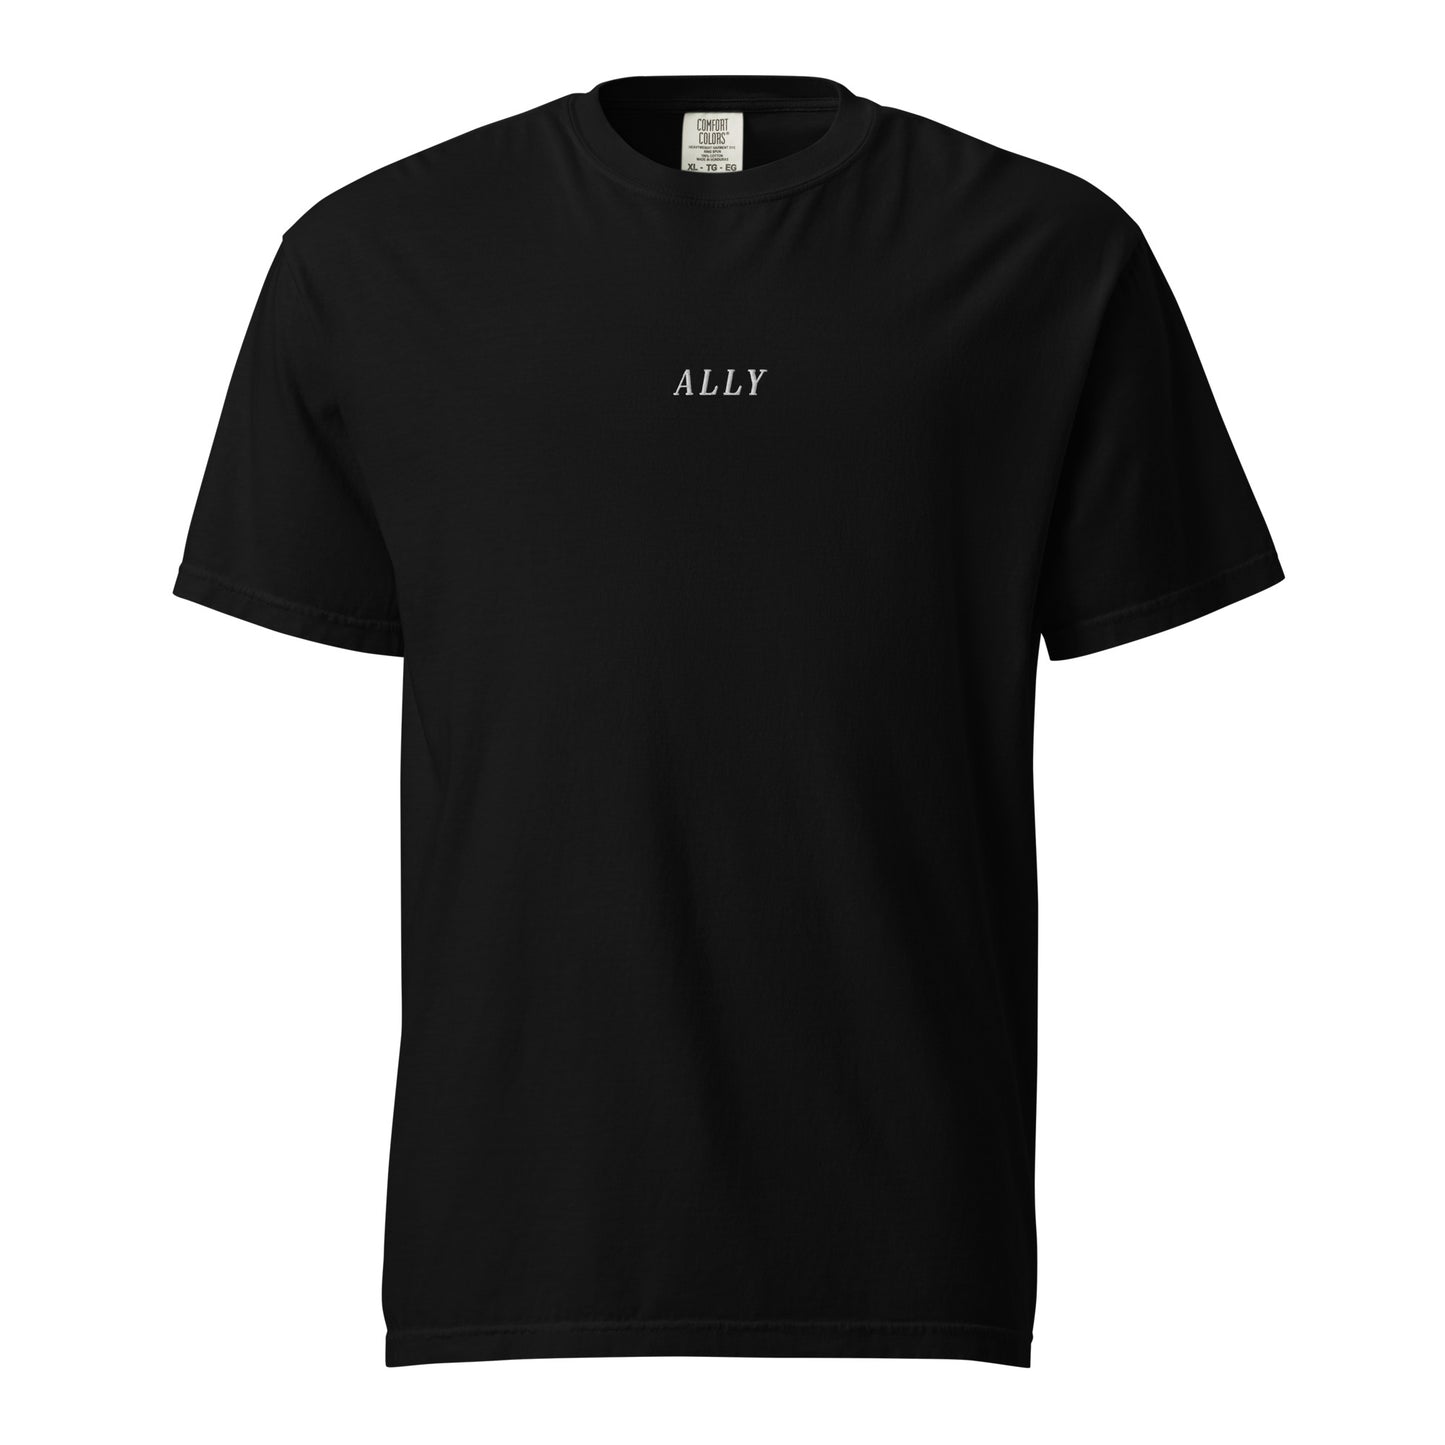 the Ally t-shirt - hvit brodering